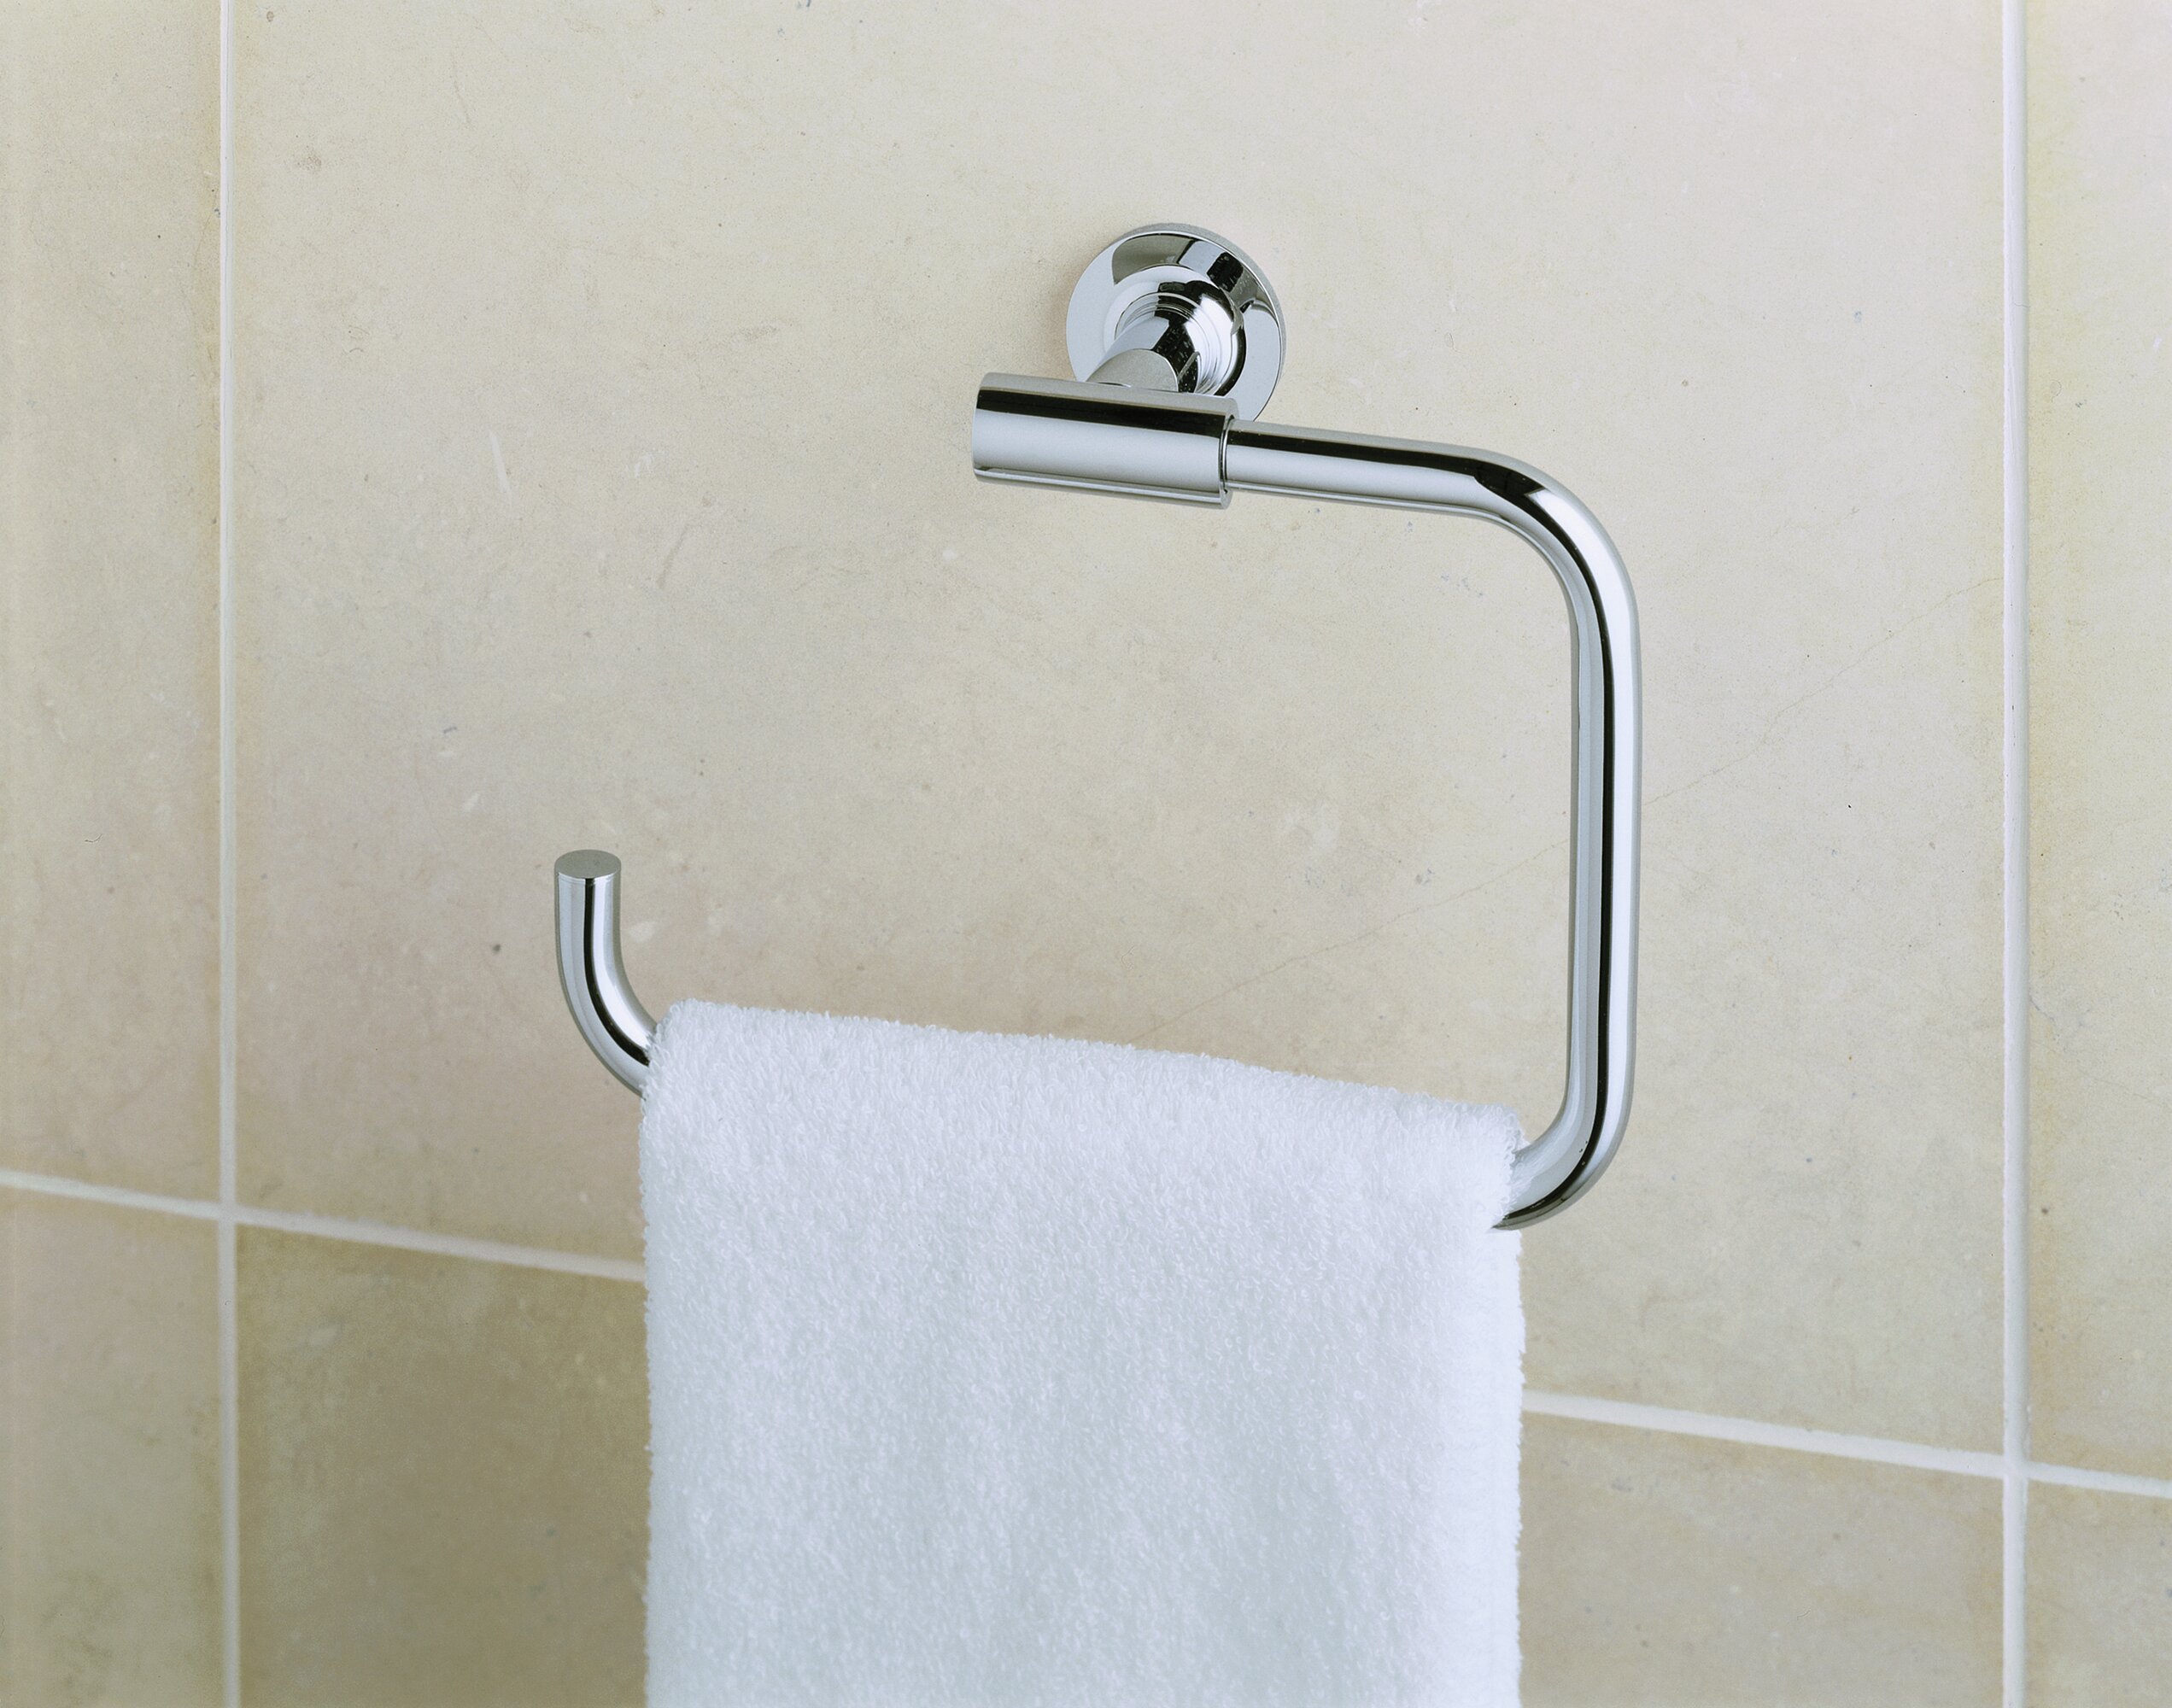 Kohler Purist Best Accessory Pack Purist 24 Towel Rack 24 Towel Bar Towel RI Brushed Nickel Bathroom Hardware Bathroom Hardware Set Best